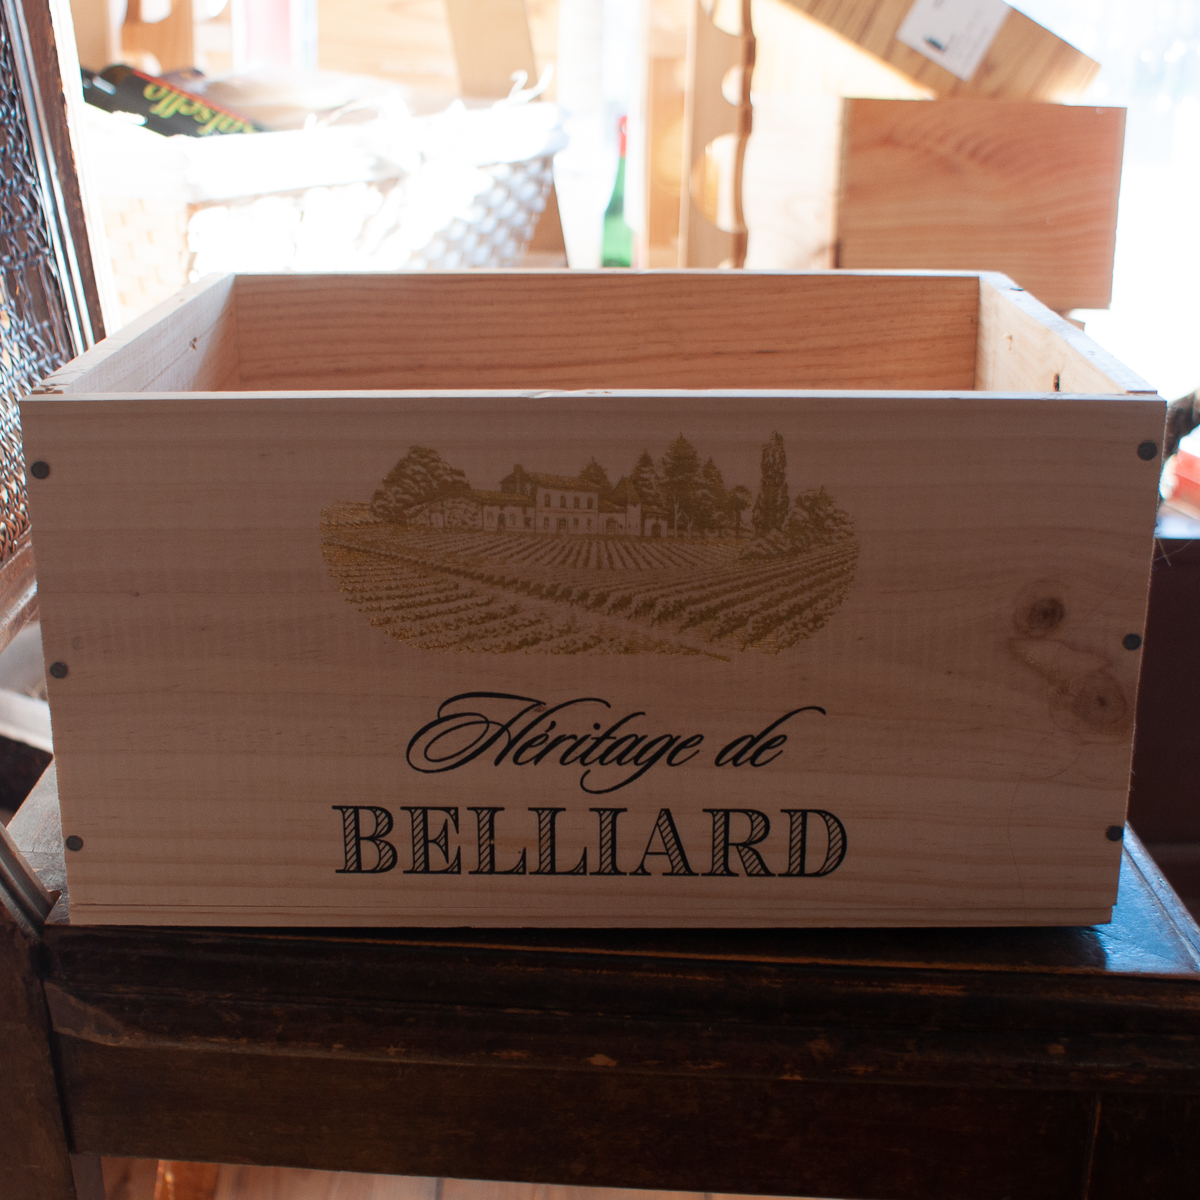 Cassetta di legno originale del Heritage de Belliard per 6 bottiglie